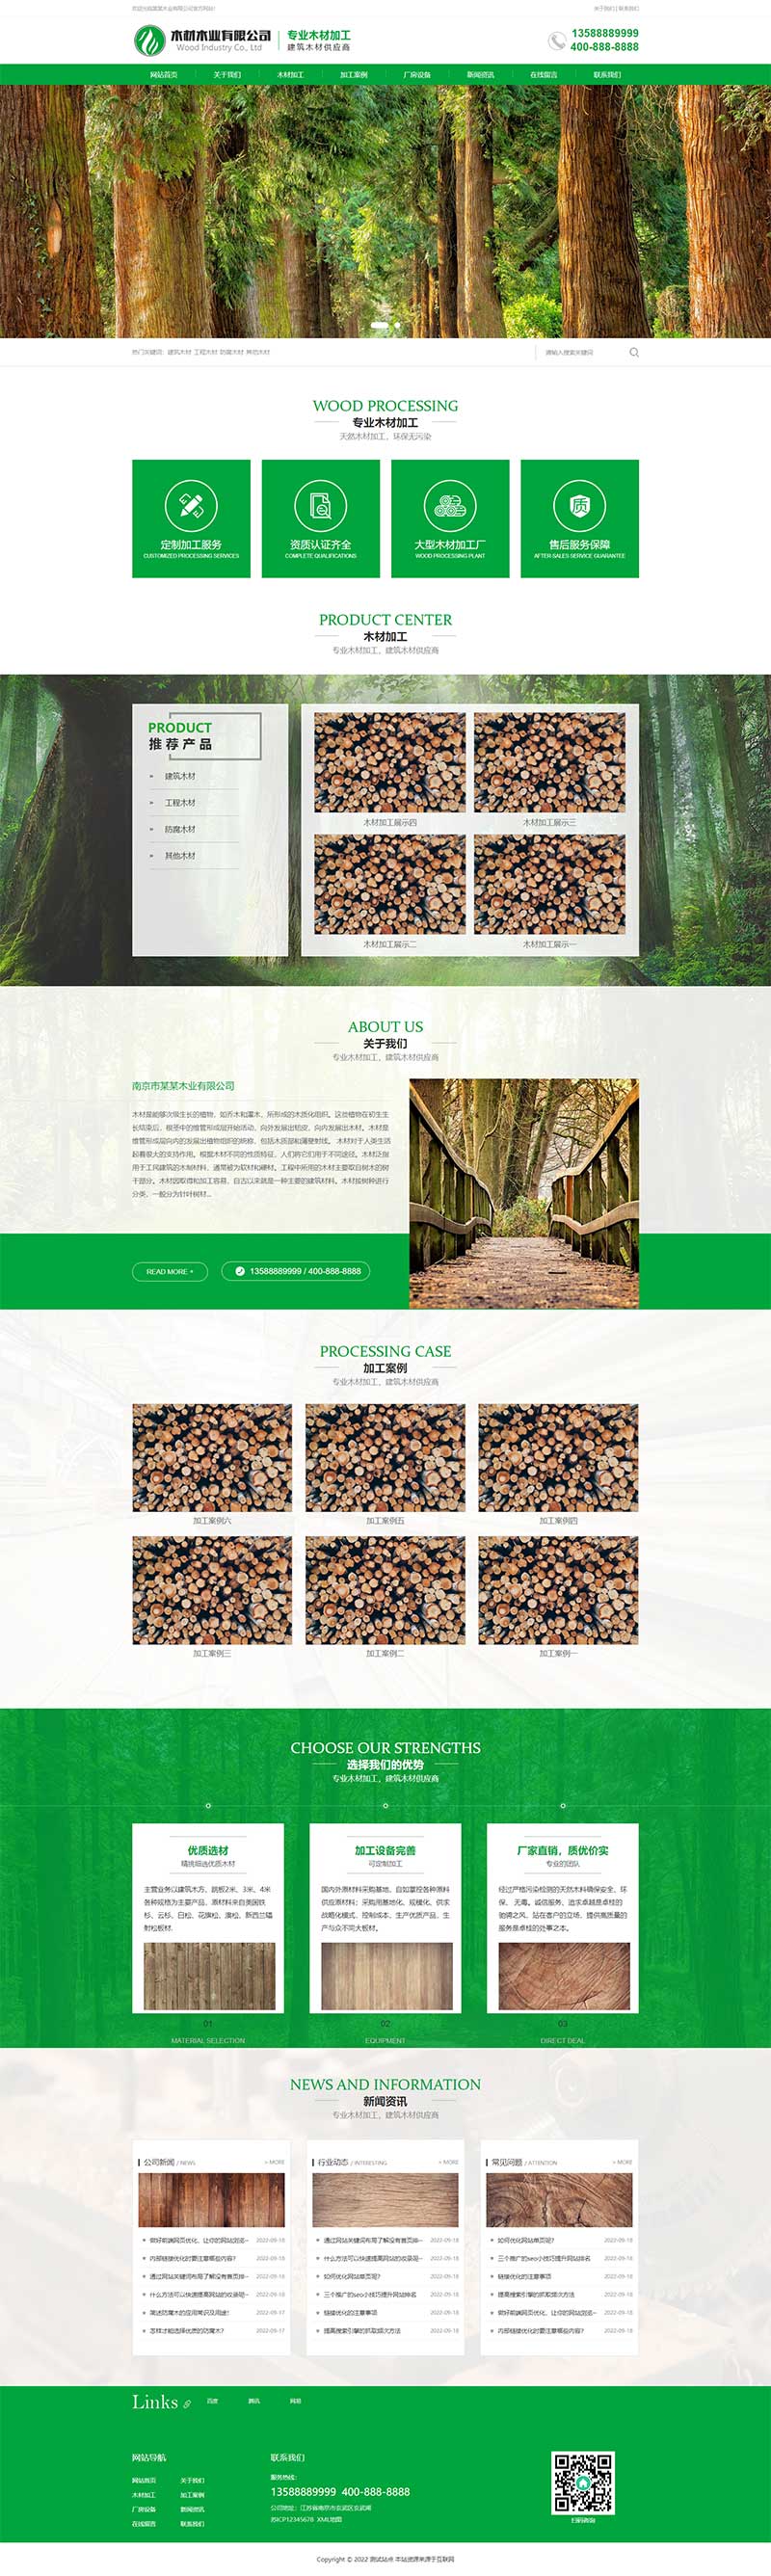 木材木业加工企业网站Wordpress模板主题效果图